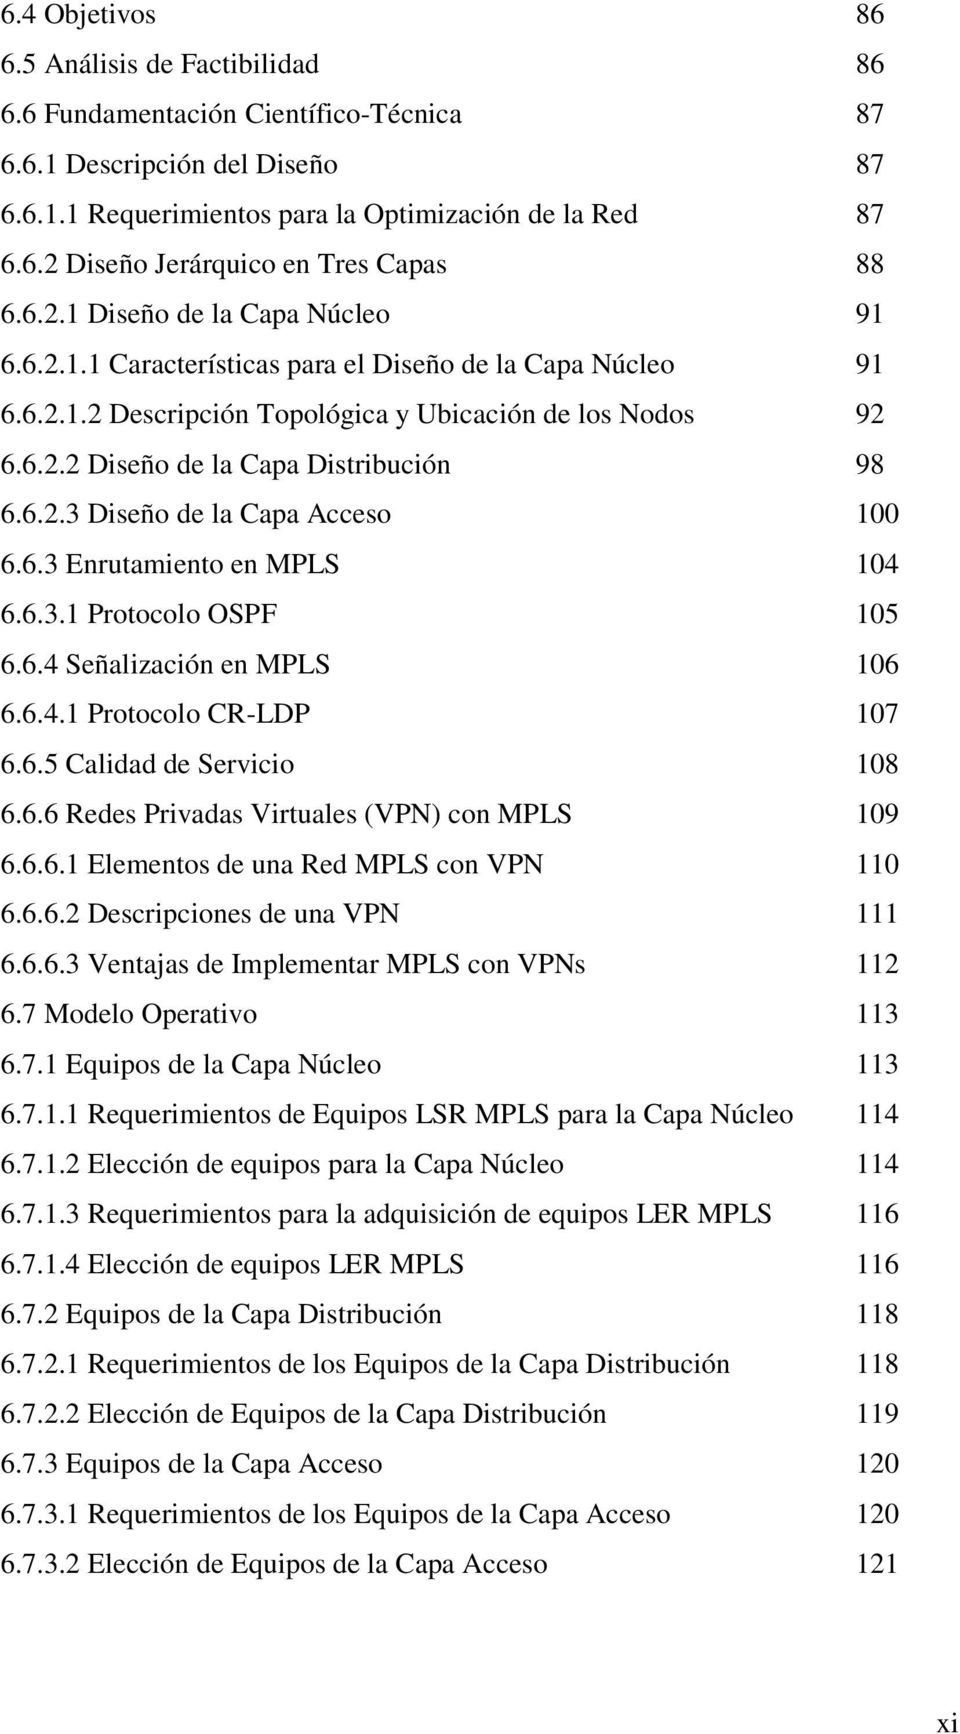 6.2.3 Diseño de la Capa Acceso 100 6.6.3 Enrutamiento en MPLS 104 6.6.3.1 Protocolo OSPF 105 6.6.4 Señalización en MPLS 106 6.6.4.1 Protocolo CR-LDP 107 6.6.5 Calidad de Servicio 108 6.6.6 Redes Privadas Virtuales (VPN) con MPLS 109 6.